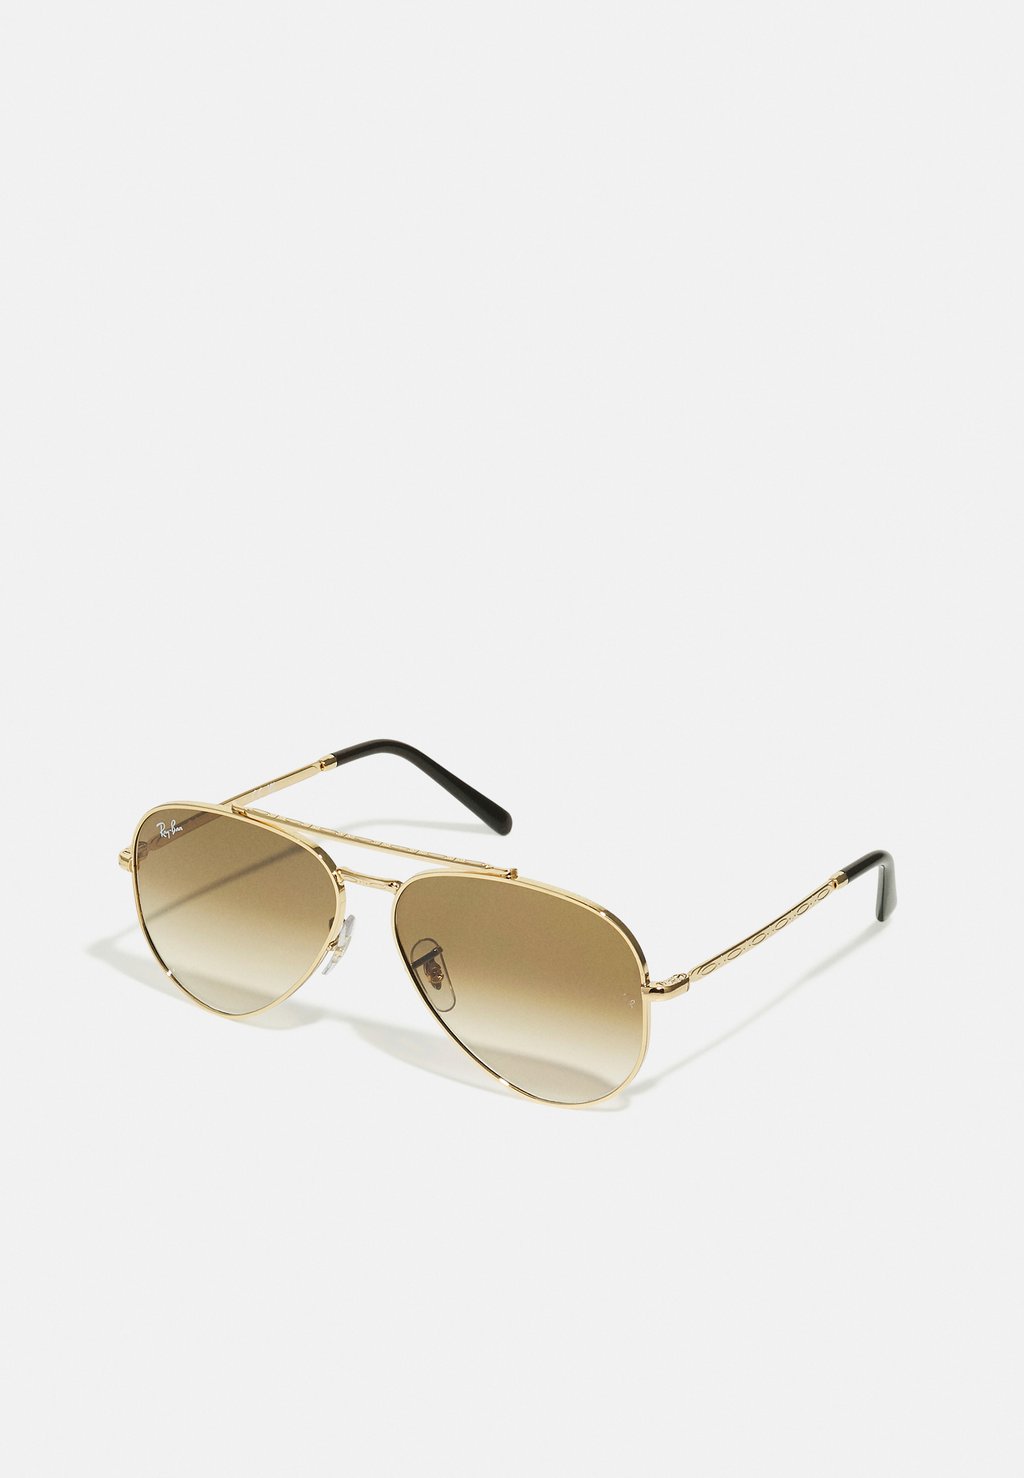 Солнцезащитные очки New Aviator Unisex Ray-Ban, золотой солнцезащитные очки aviator unisex ray ban